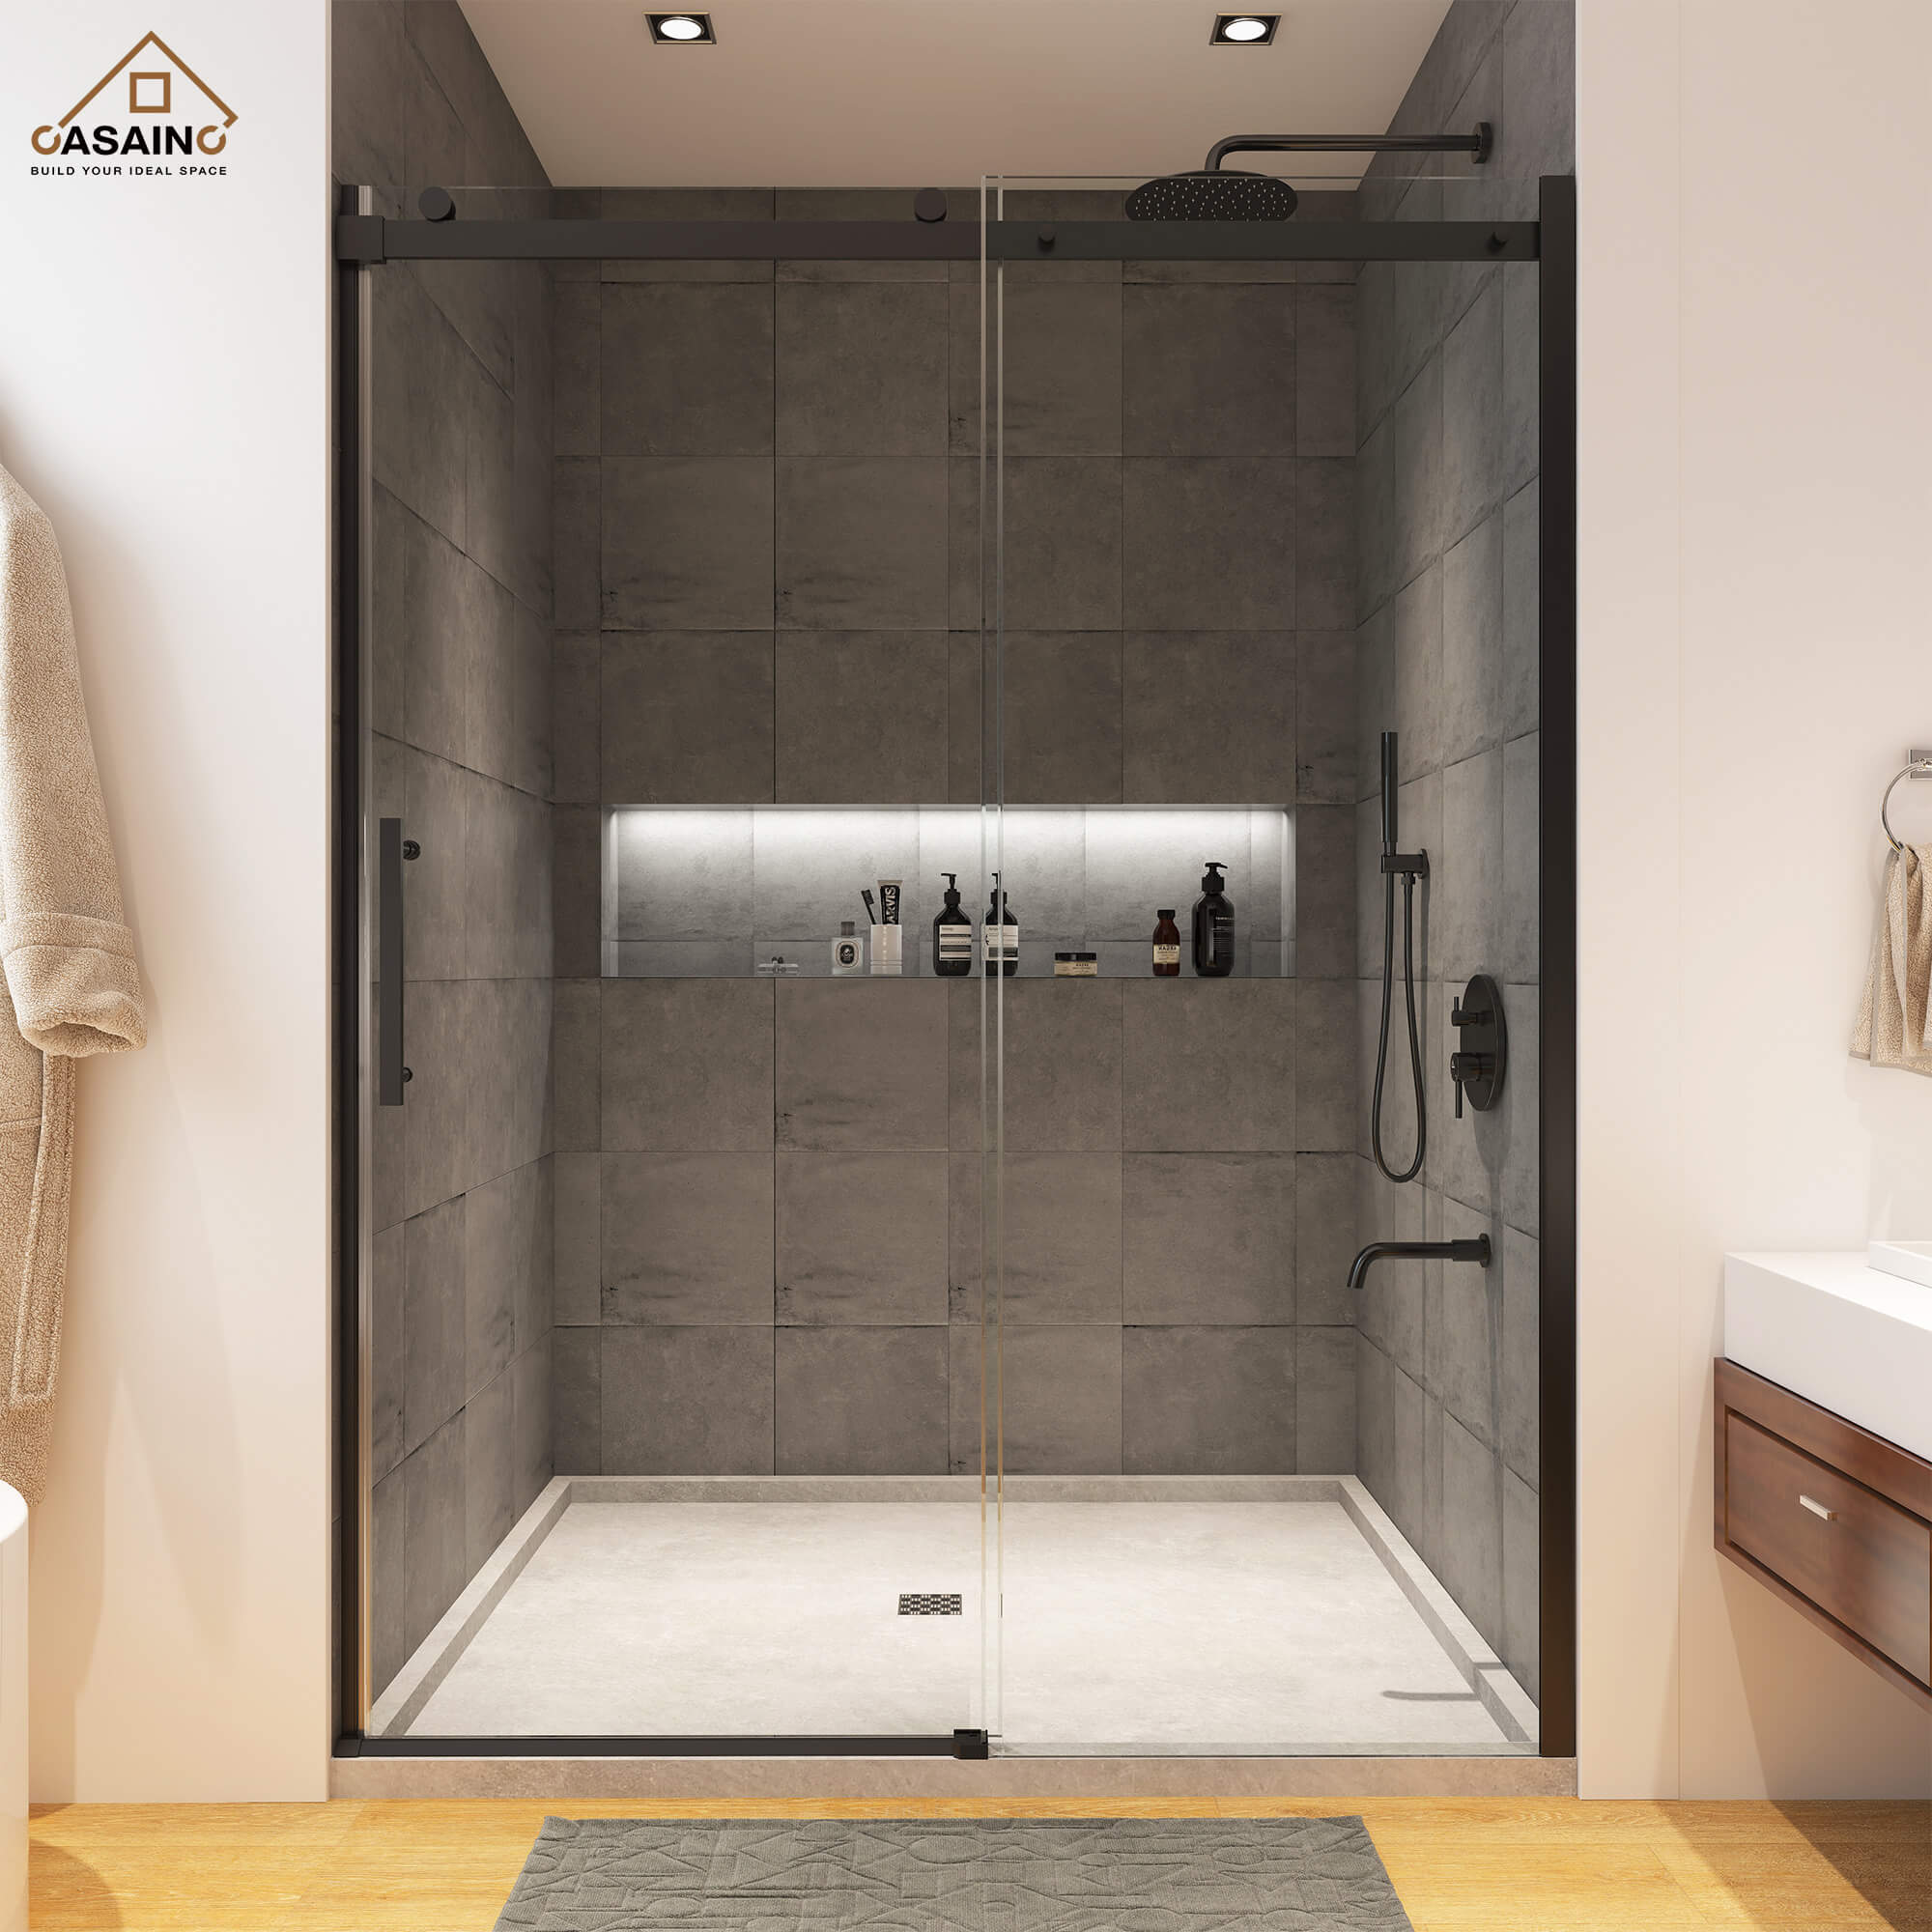 48"x76" Frameless Single Sliding Shower Door in Matte Black/Chrome/Bru